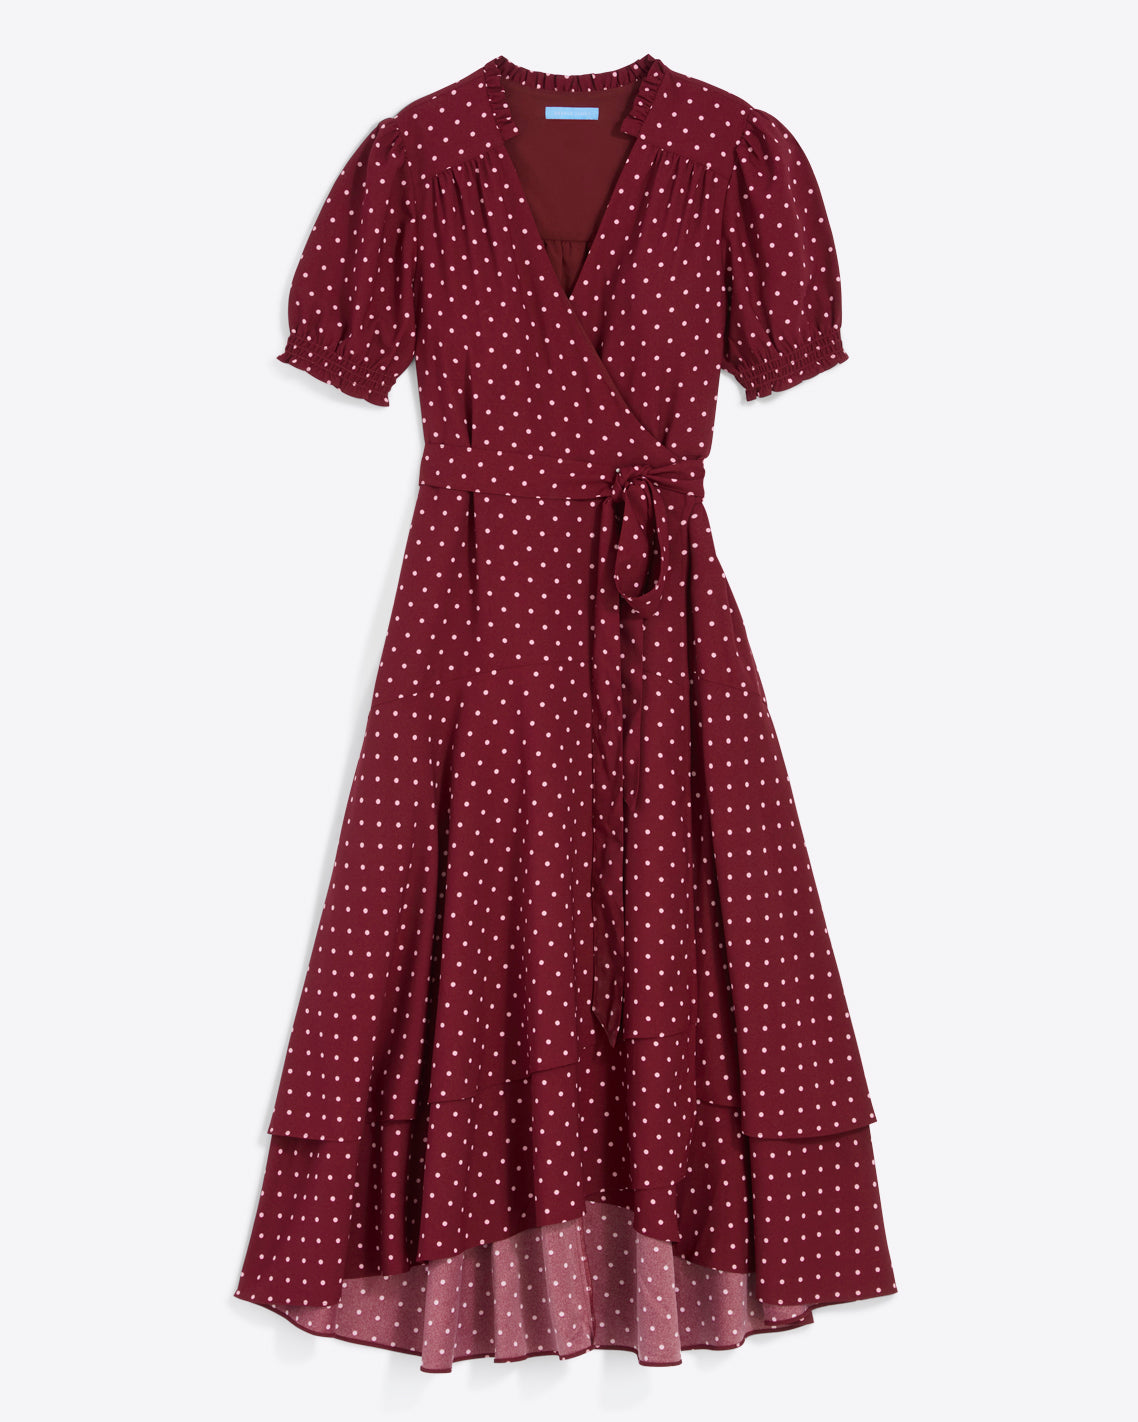 Naomi Wrap Dress in Merlot Polka Dot